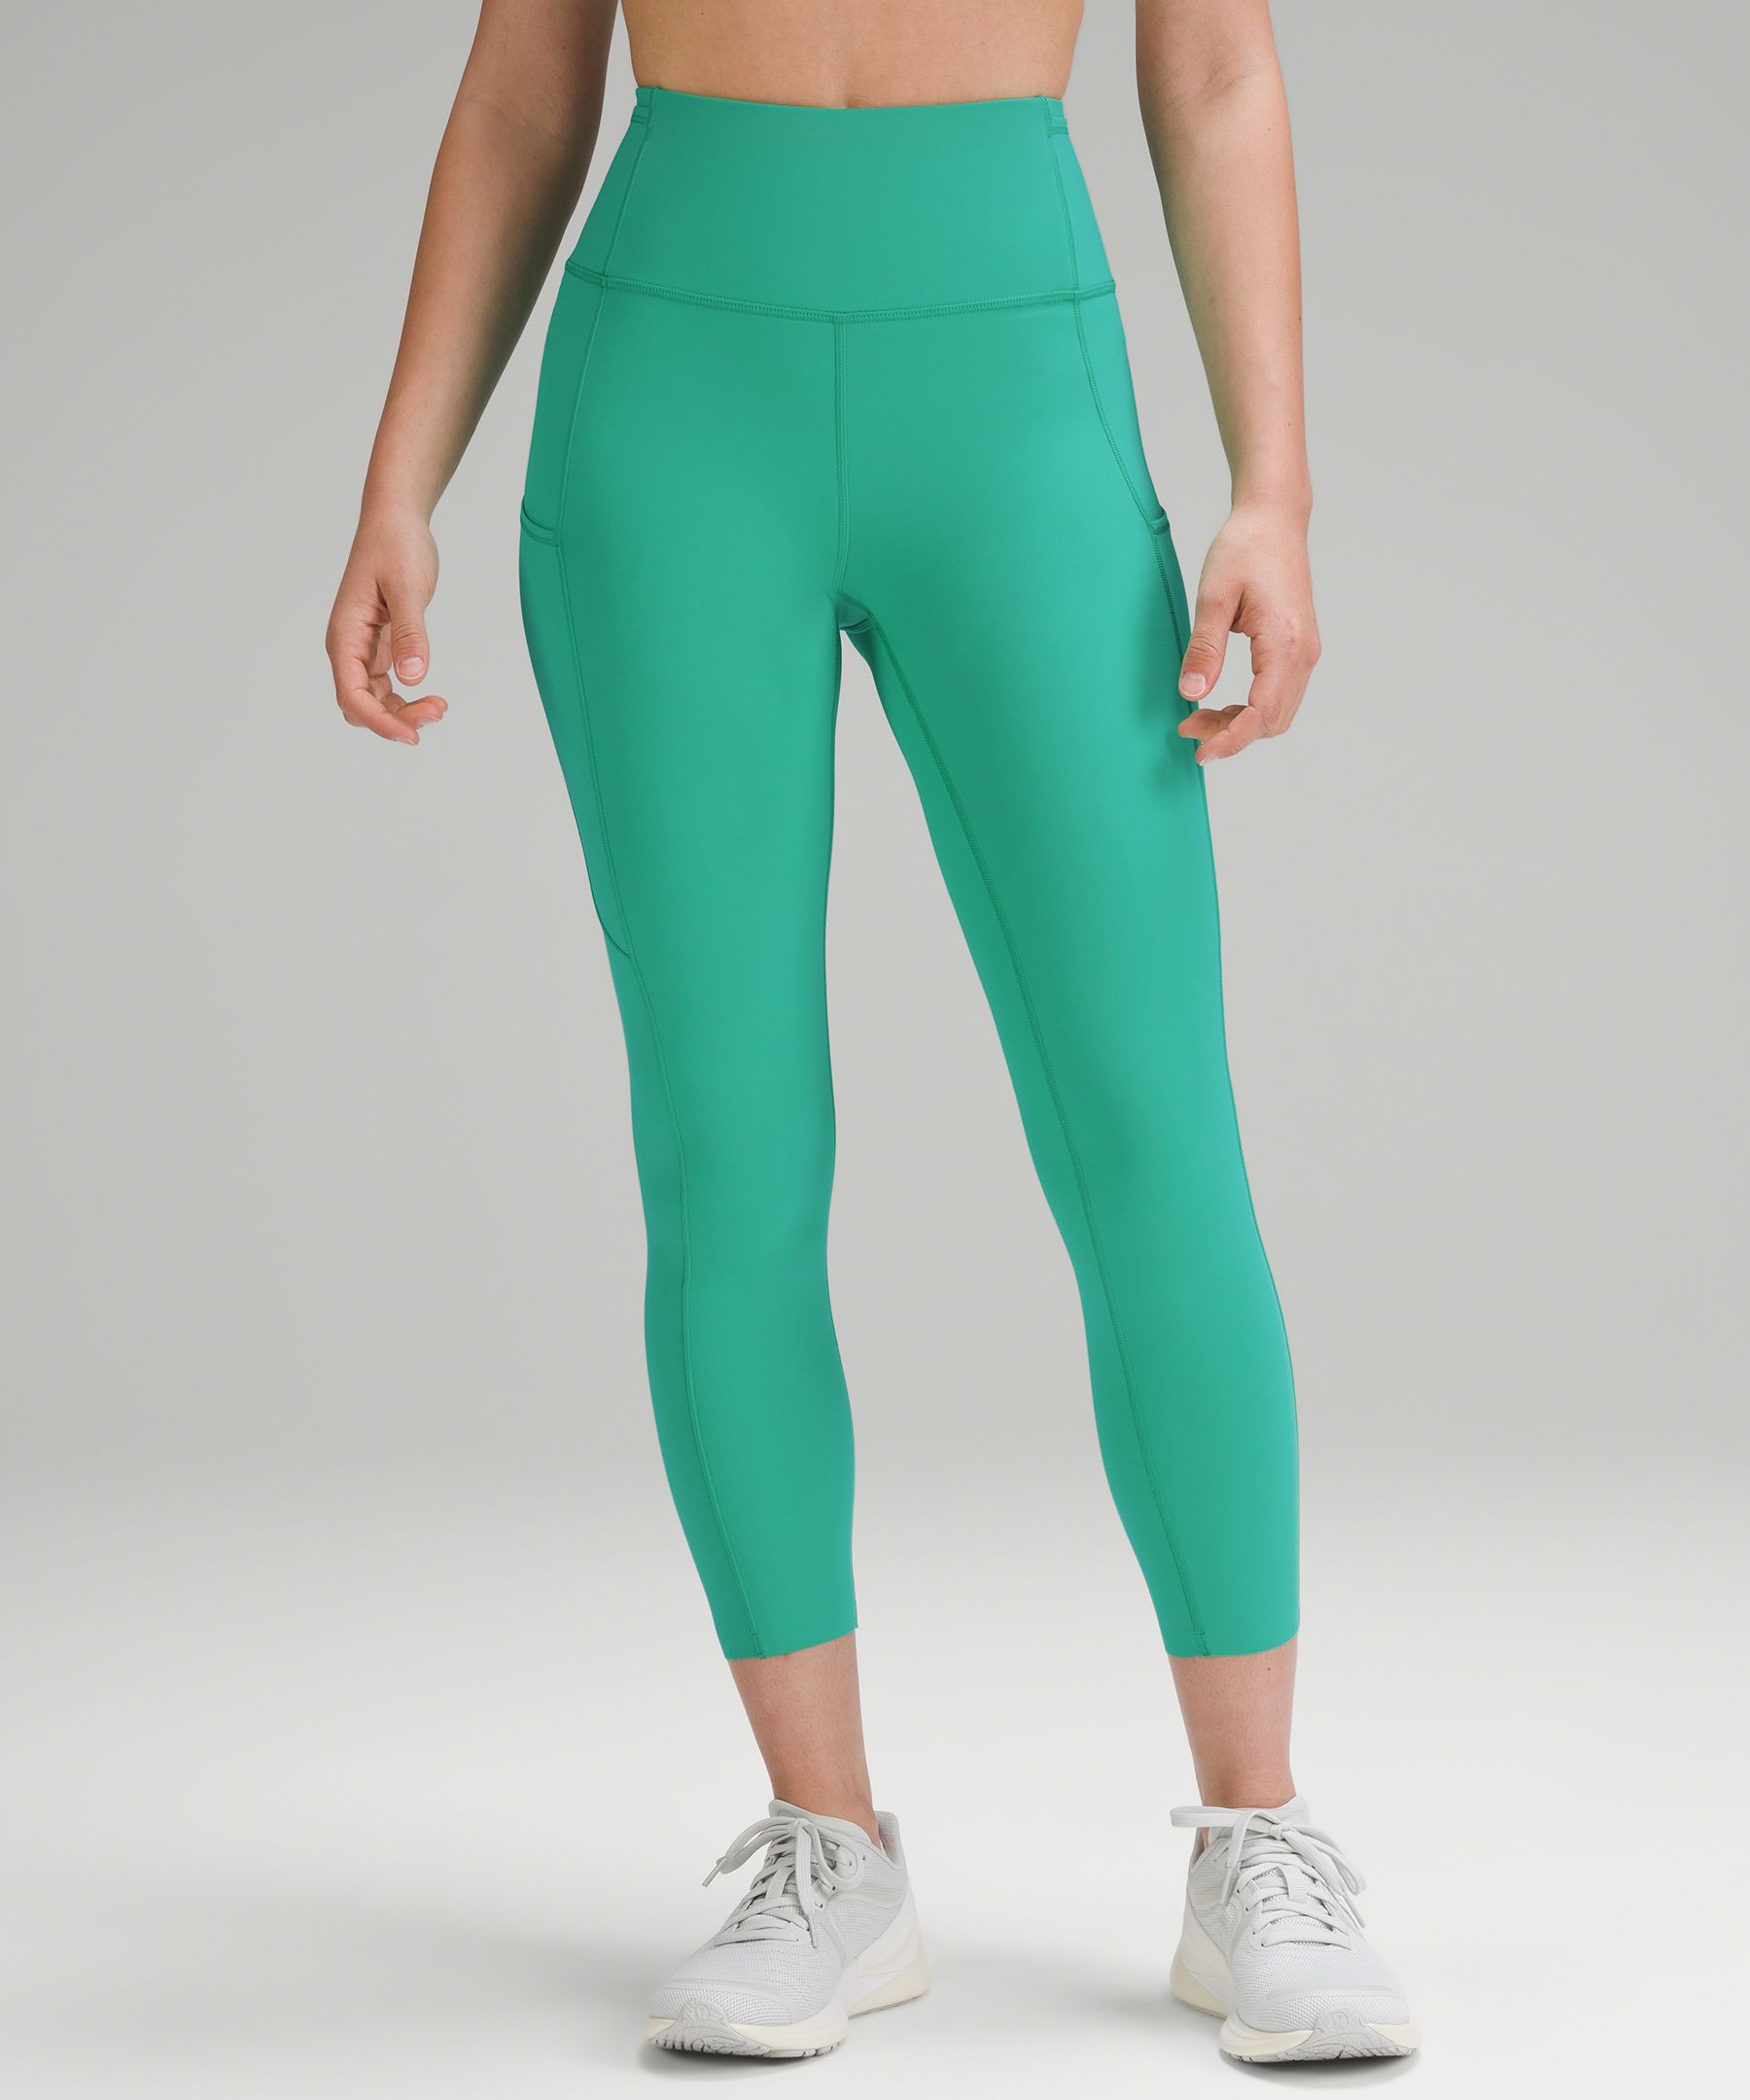 green lululemon leggings • barely worn & super - Depop